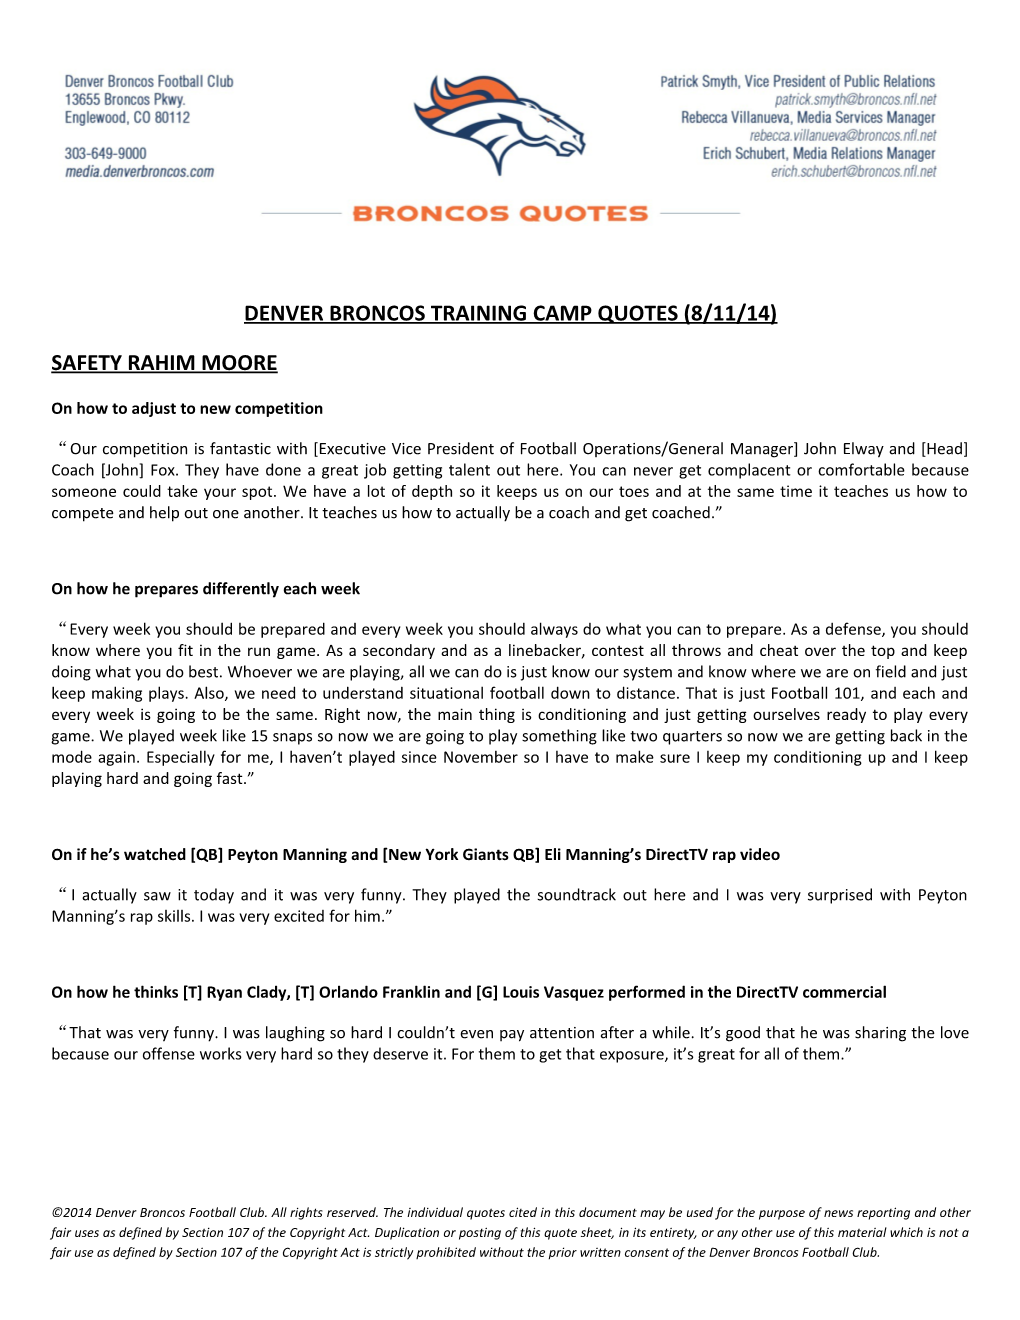 Denver Broncos Training Camp Quotes (8/11/14) s1